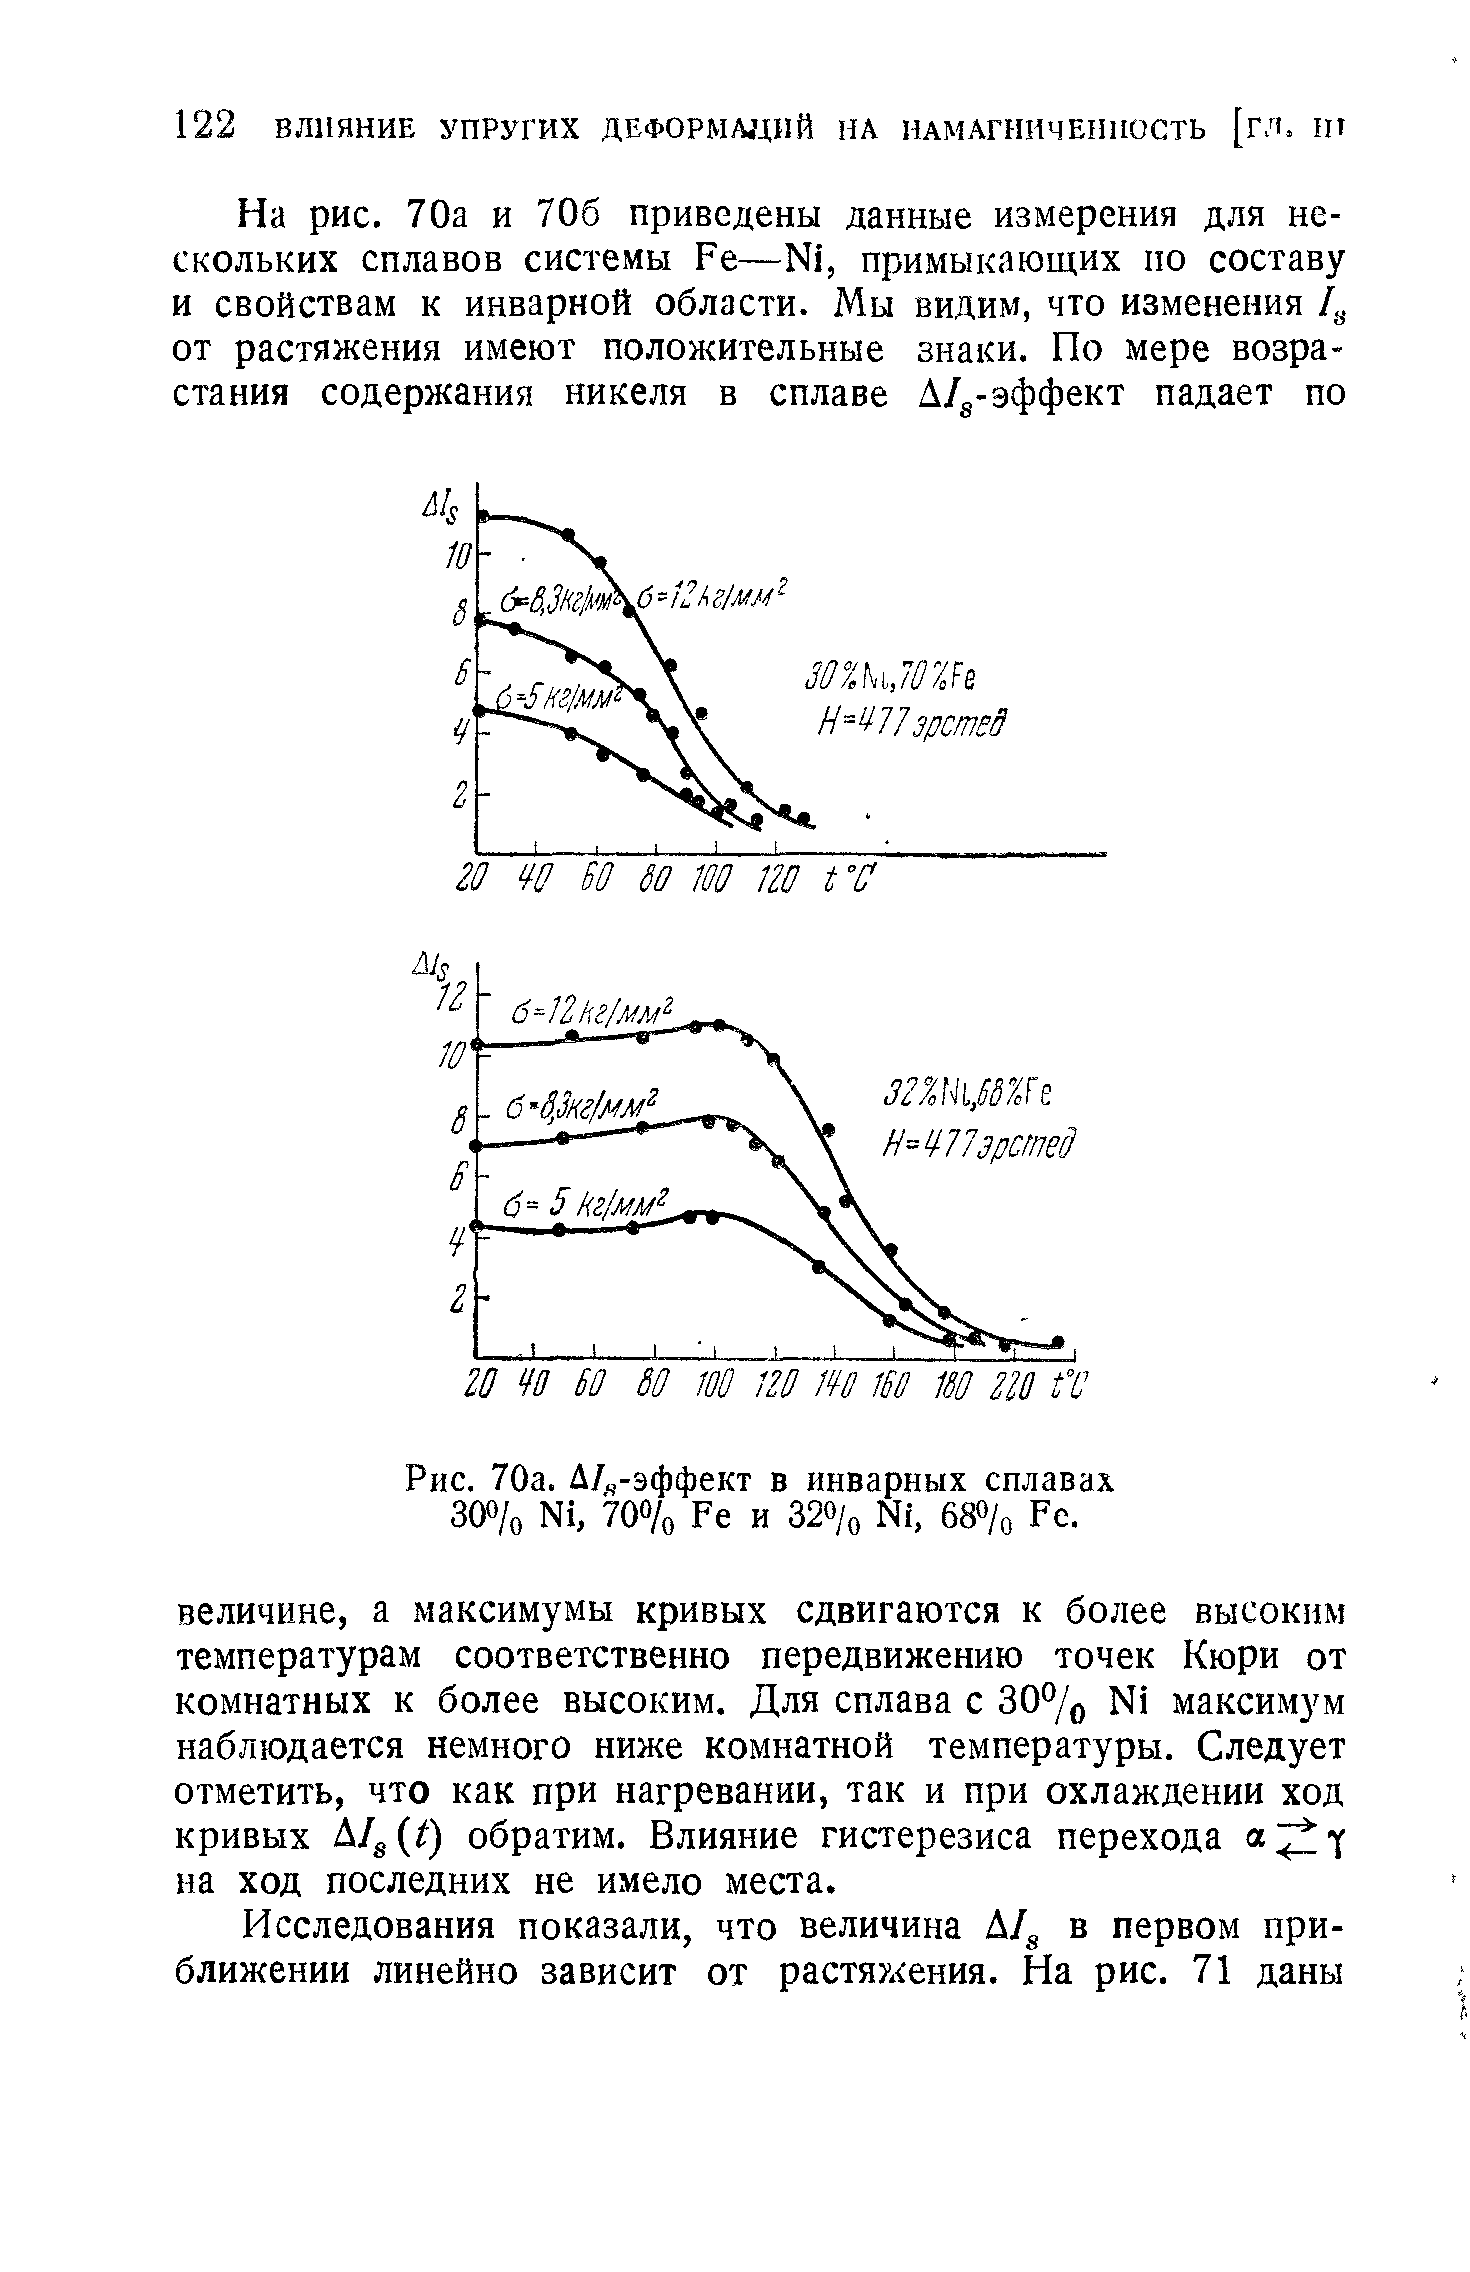 Рис. 70а. Д/ч-эффект в инварных сплавах 30 /о N1, 70 /о Ре и 68 /о Ре.
